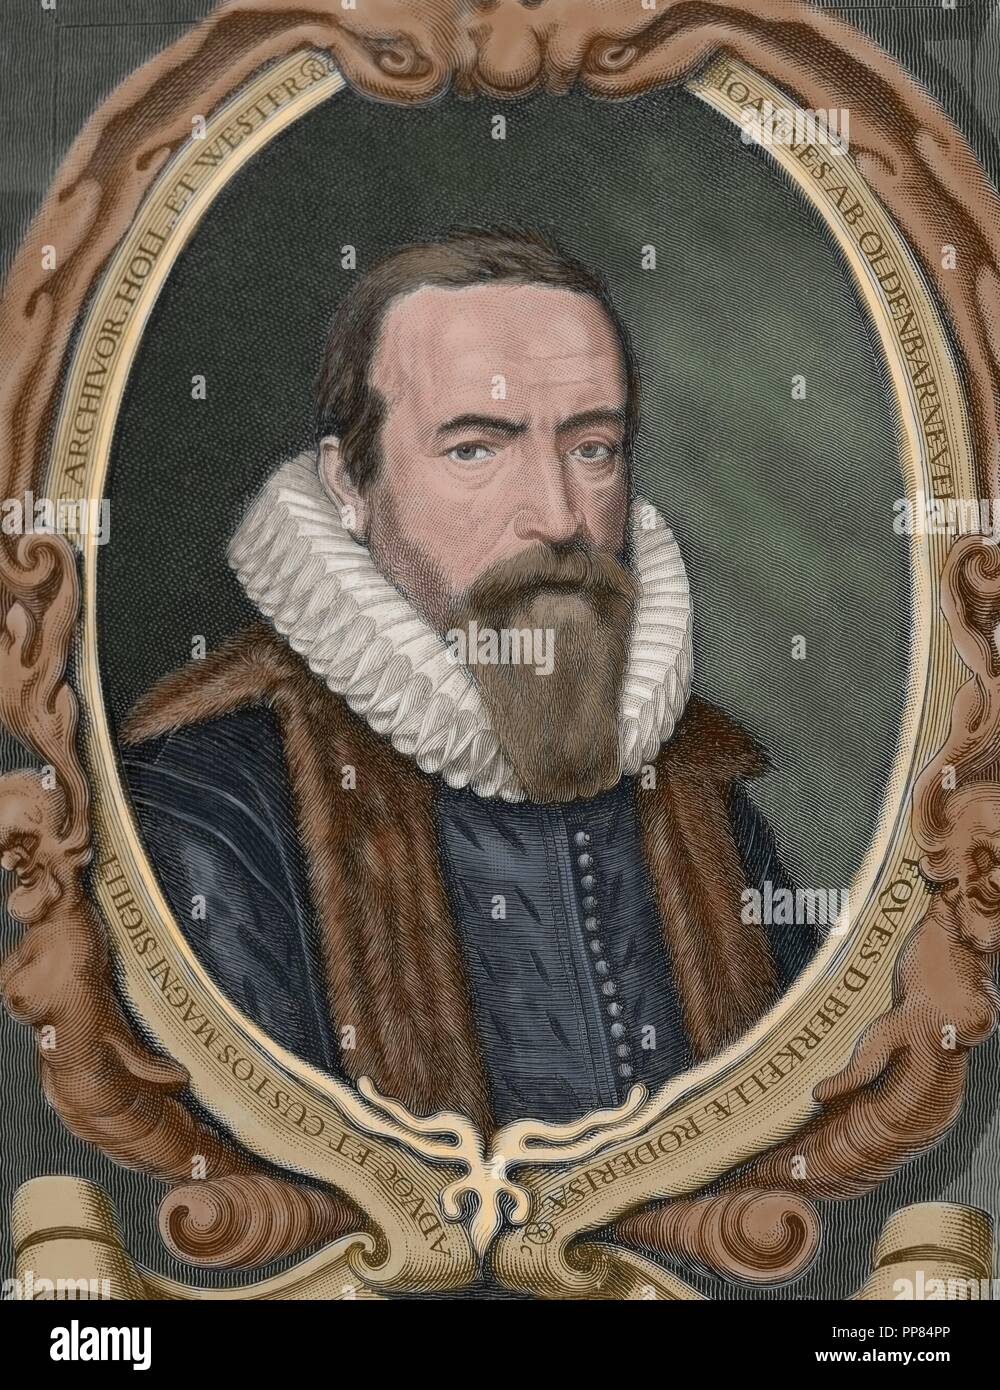 Johan van Oldenbarnevelt (1547Ð1619), signore di Berkel en Rodenrijs (1600), Gunterstein (1611) e Bakkum (1613). Statista olandese che ha giocato un ruolo importante nella lotta olandese per l'indipendenza dalla Spagna. Ritratto. Incisione. Colorati. Foto Stock